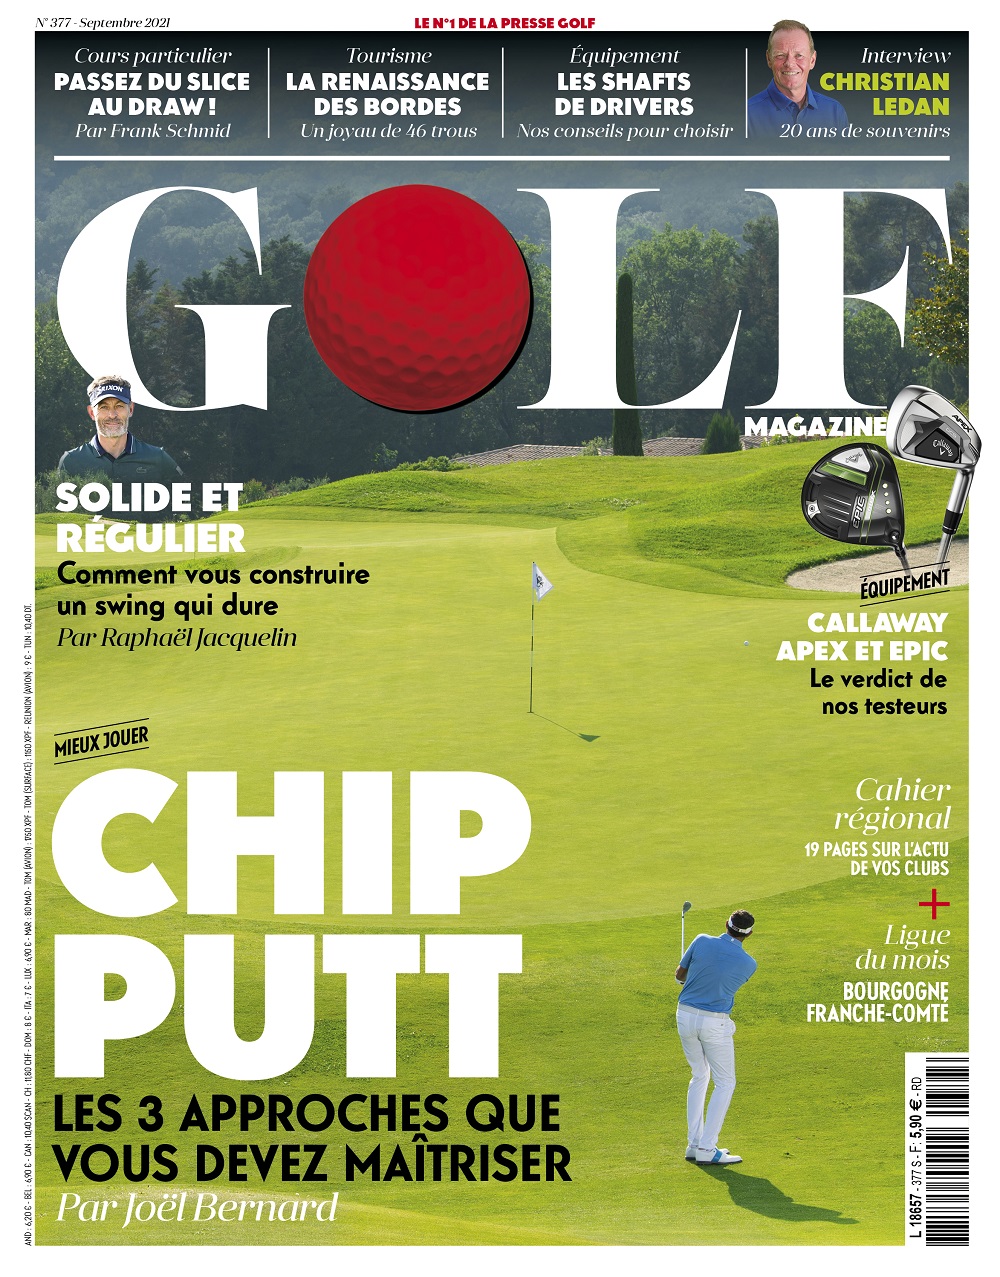 Le Golf Magazine n°377 est en kiosque !